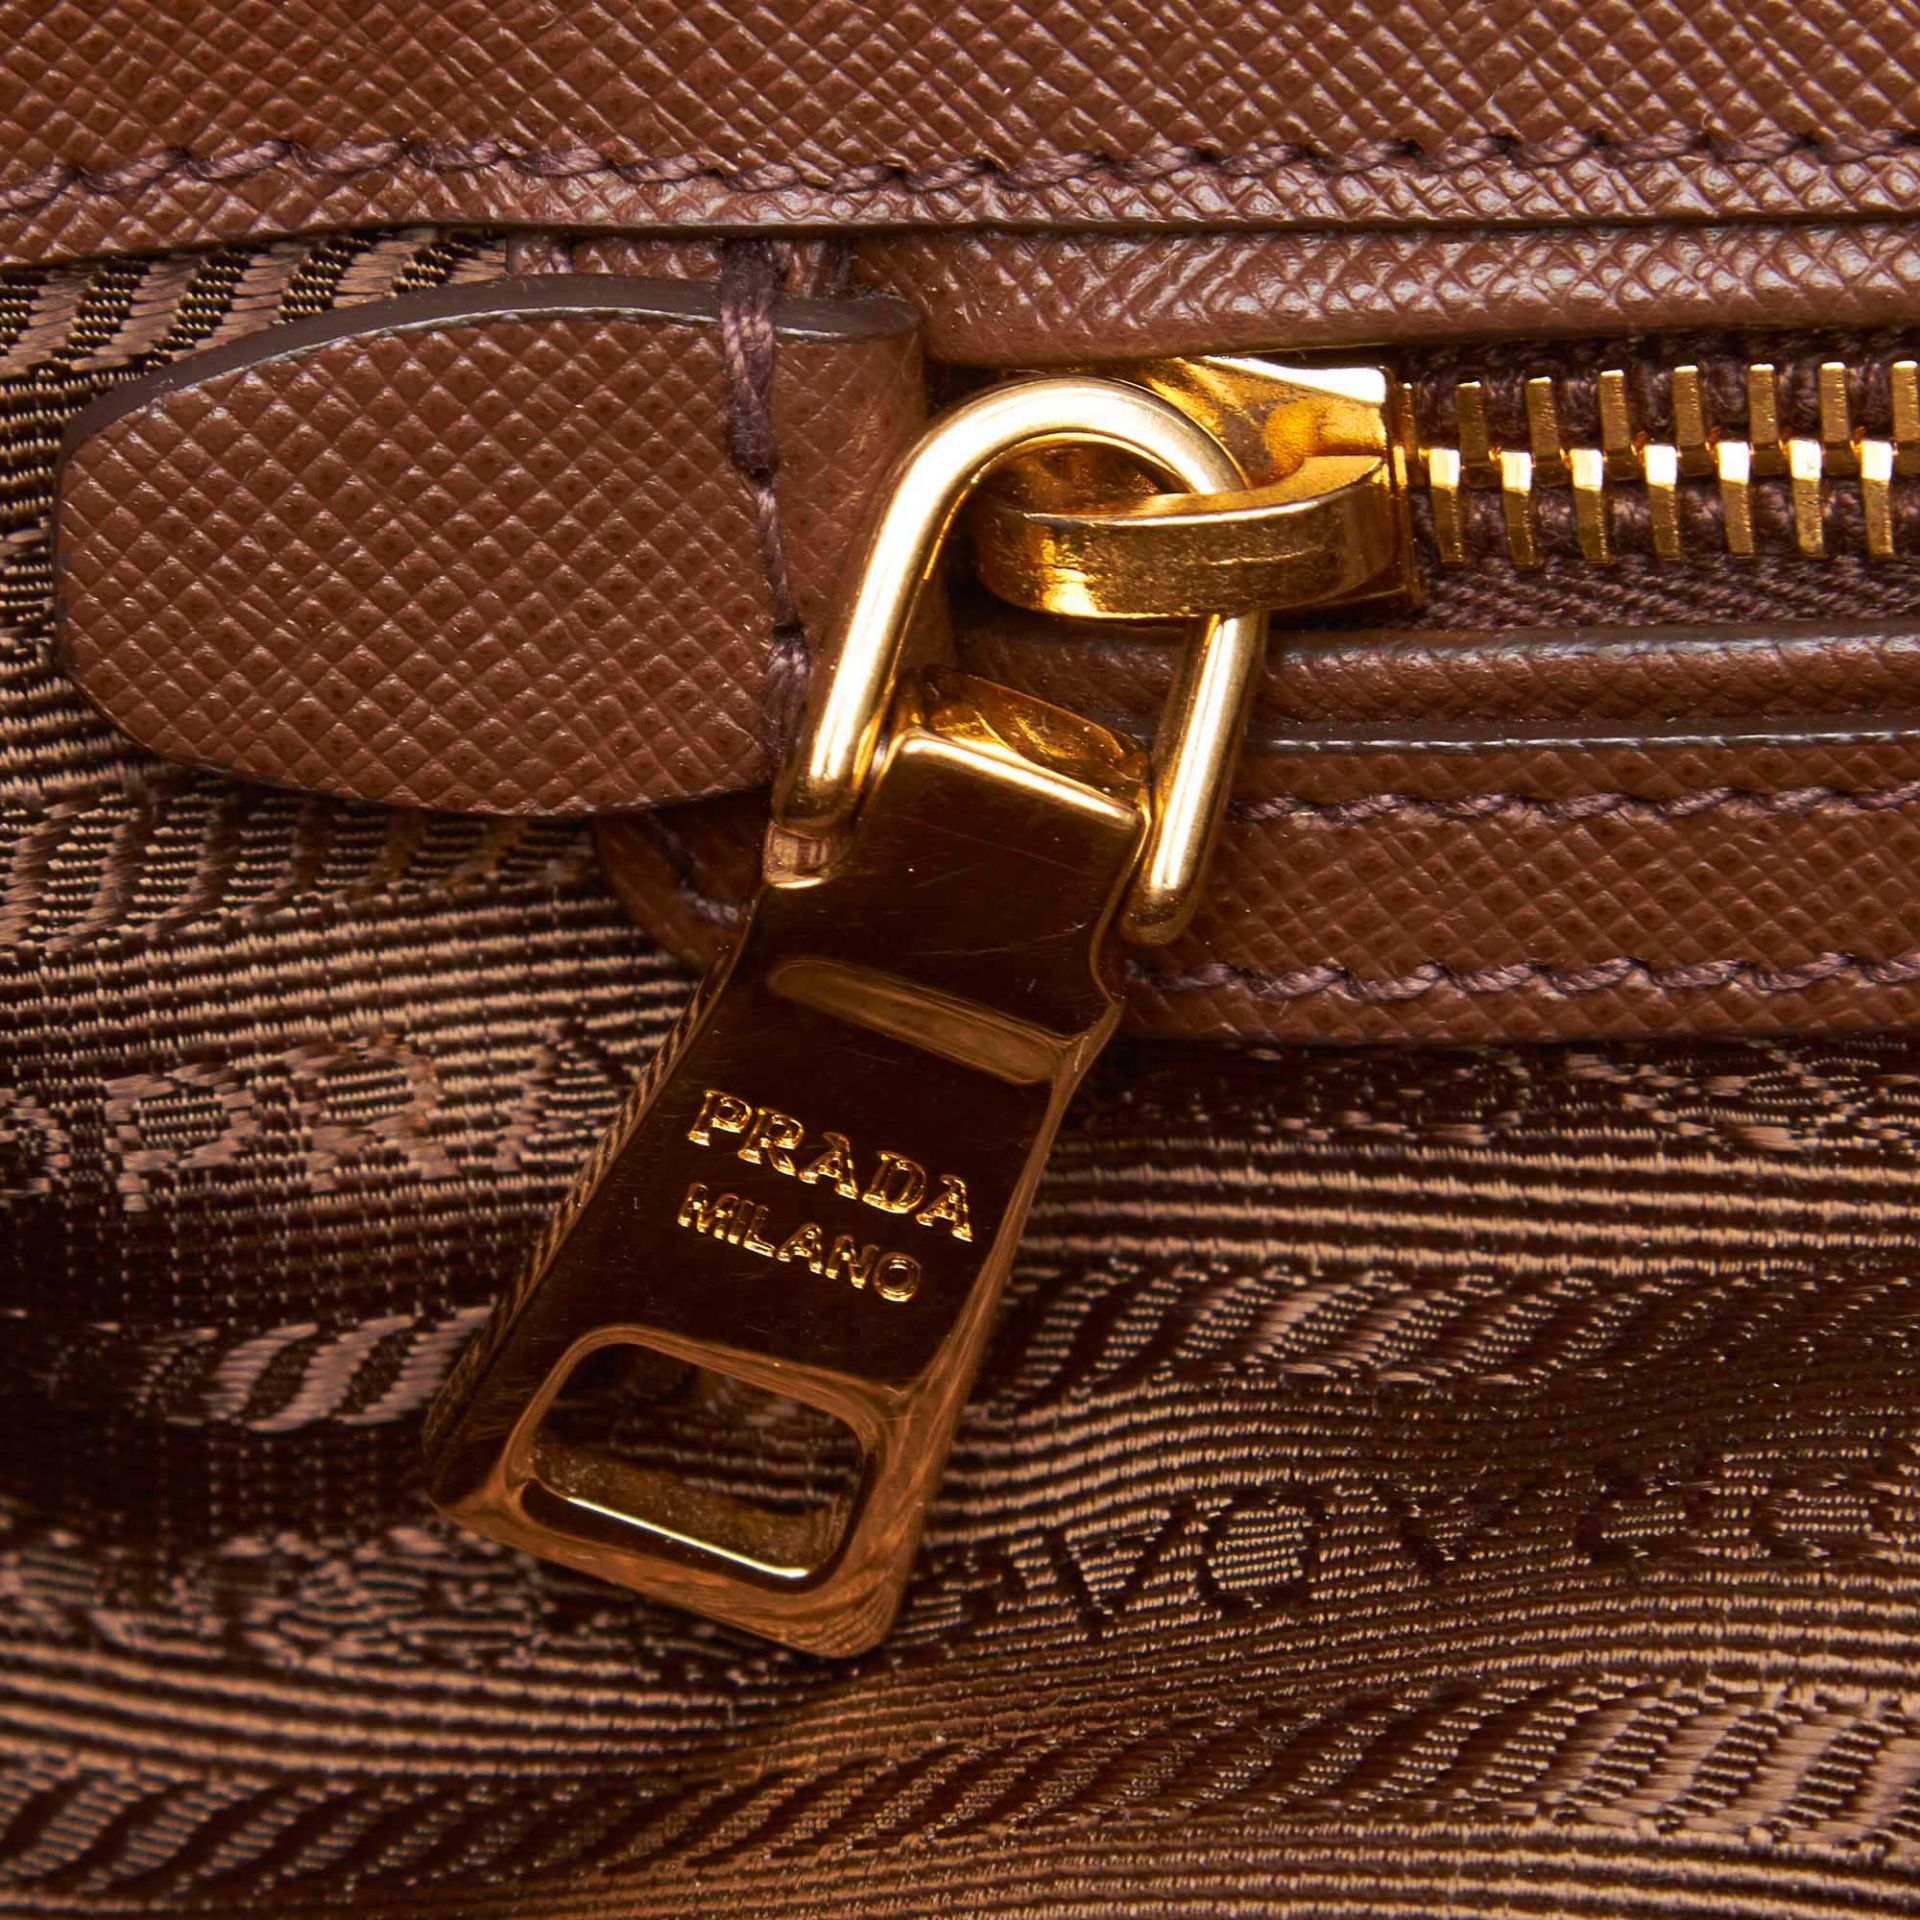 Prada Saffiano Leather Galleria Handbag - Image 4 of 10